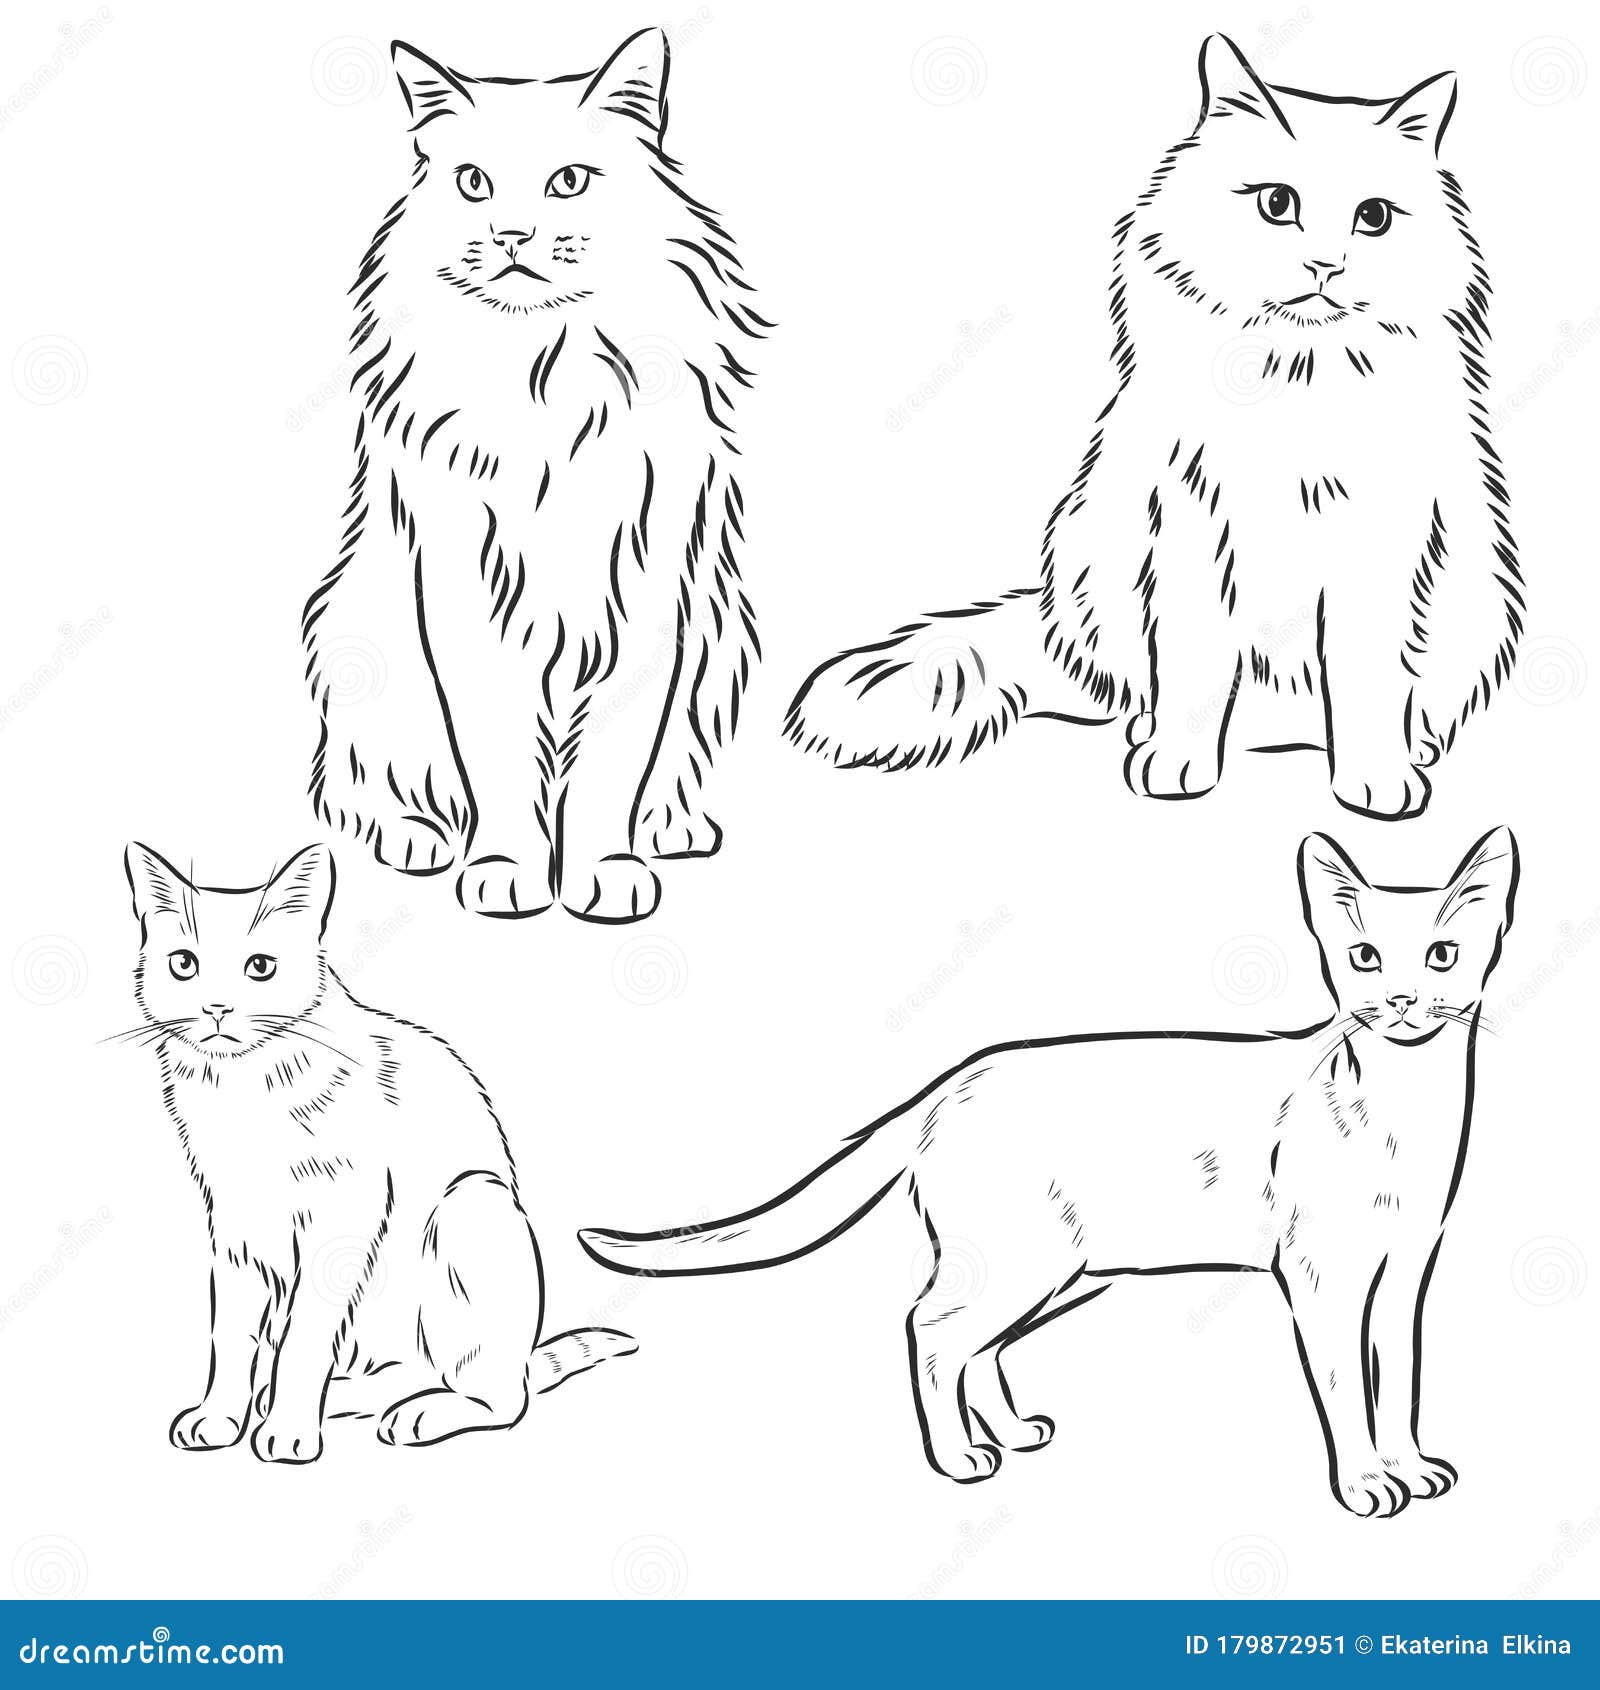 722 Fluffy  Cat drawing Cats illustration Cat illustration